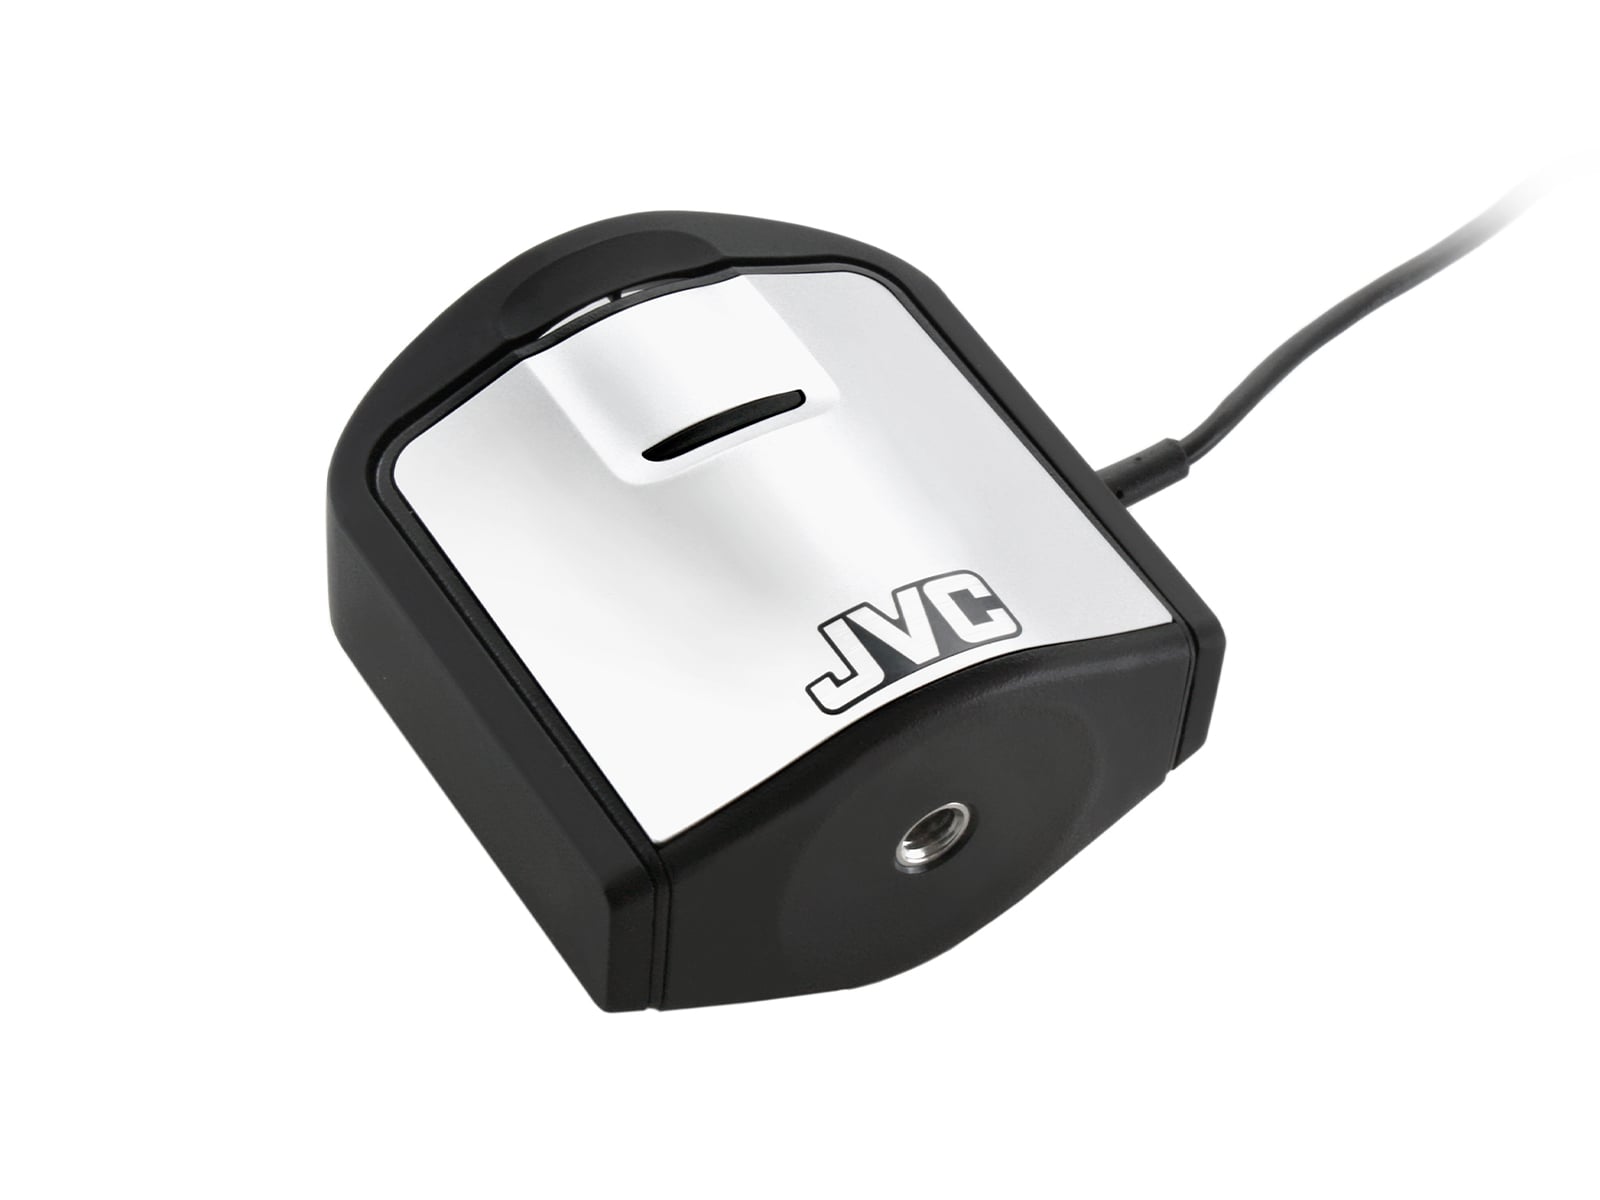 Kit de capteur d'étalonnage JVC Totoku Medivisor NX avec logiciel d'assurance qualité (CAL-016) Monitors.com